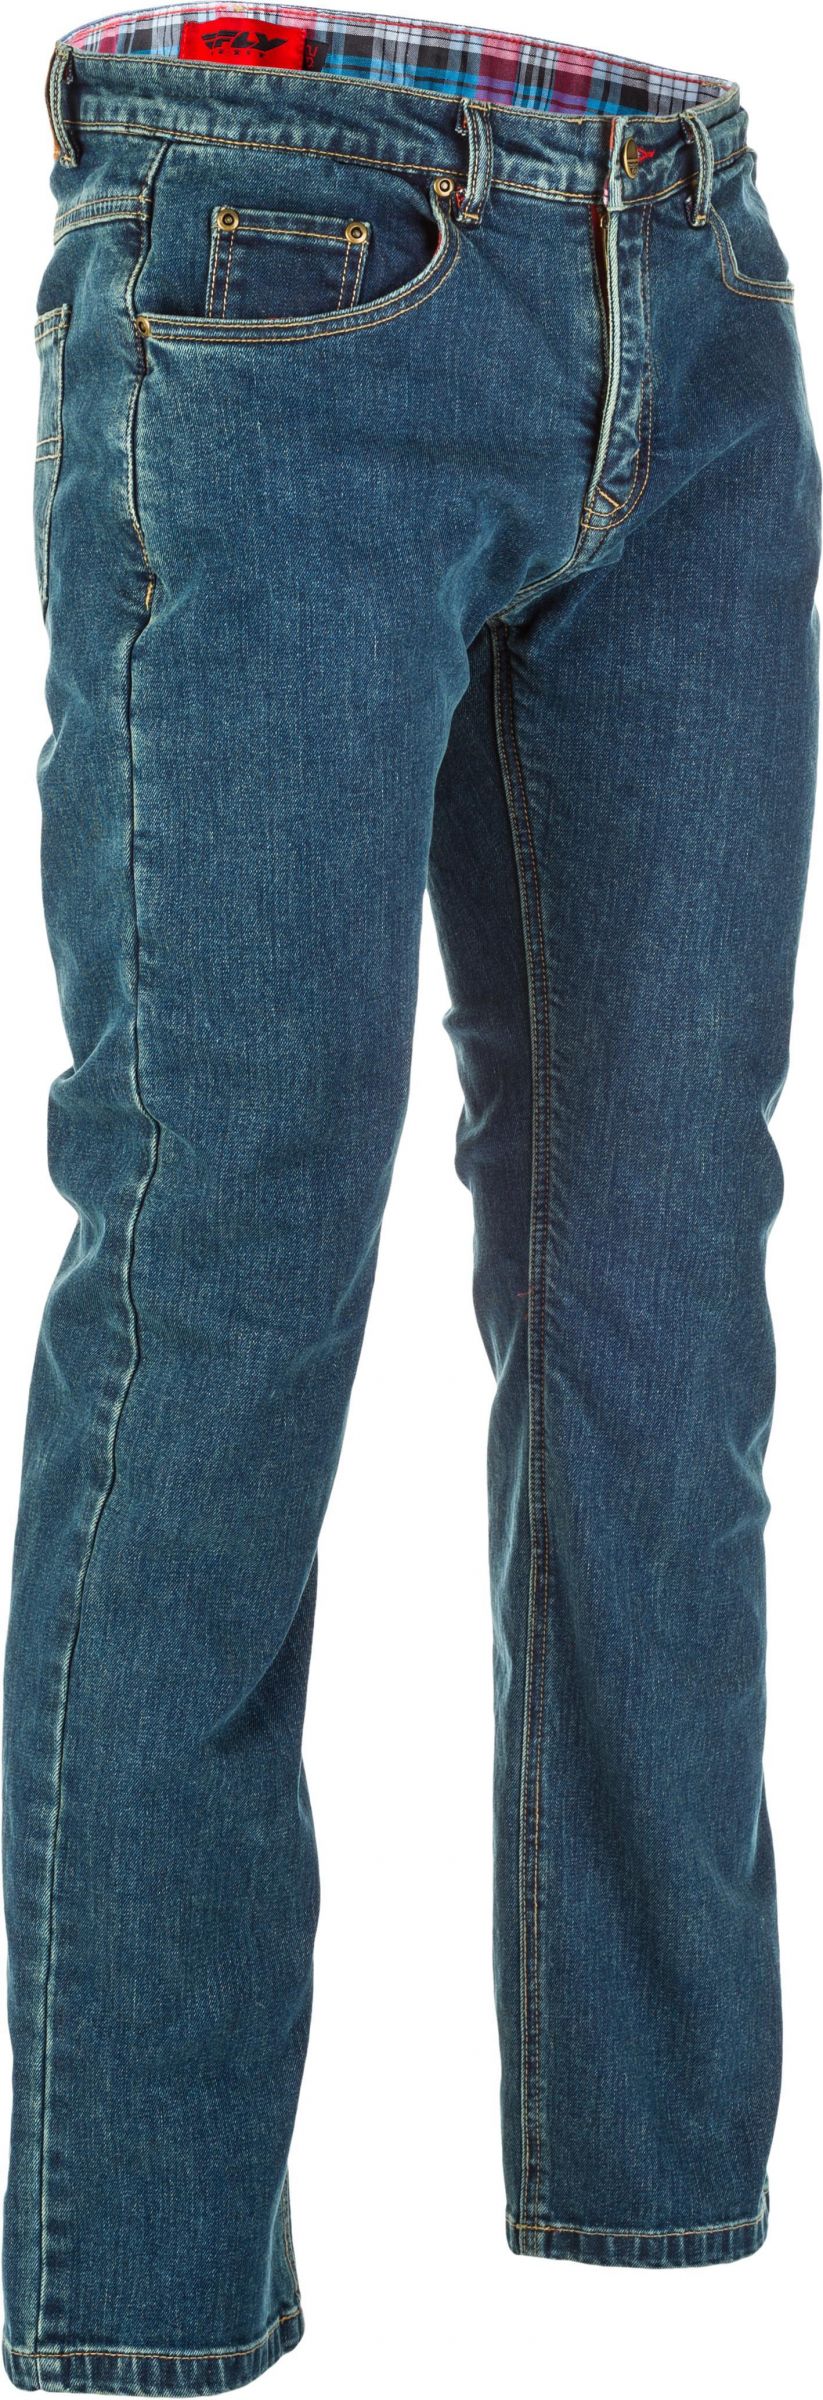 8RQP-FL-6049-478-30432TALL Resistance Jeans